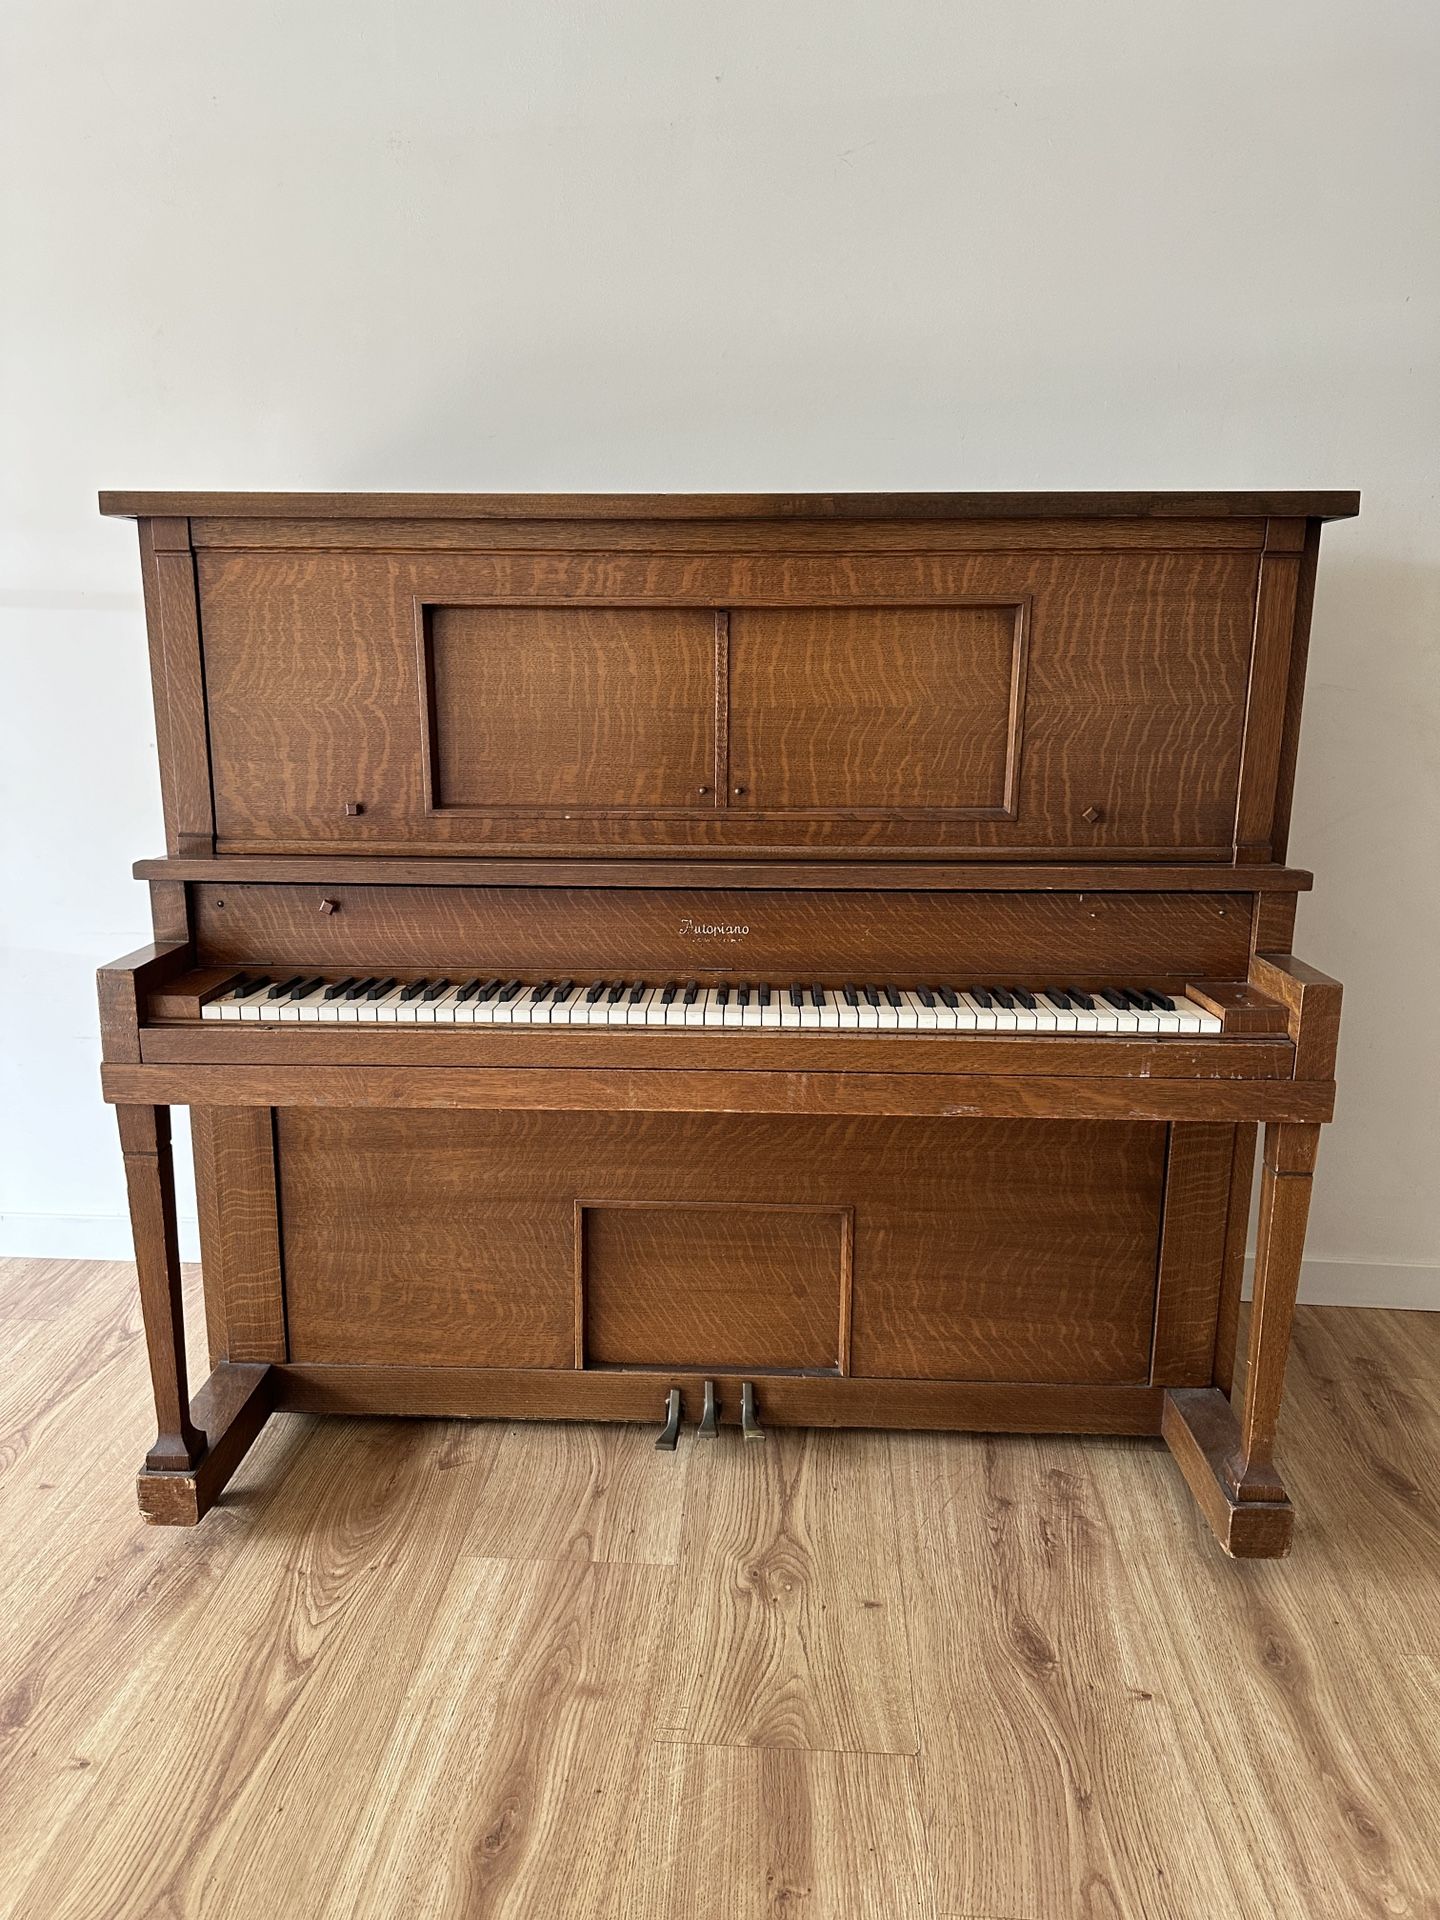 Piano For sale “Autopiano New York “